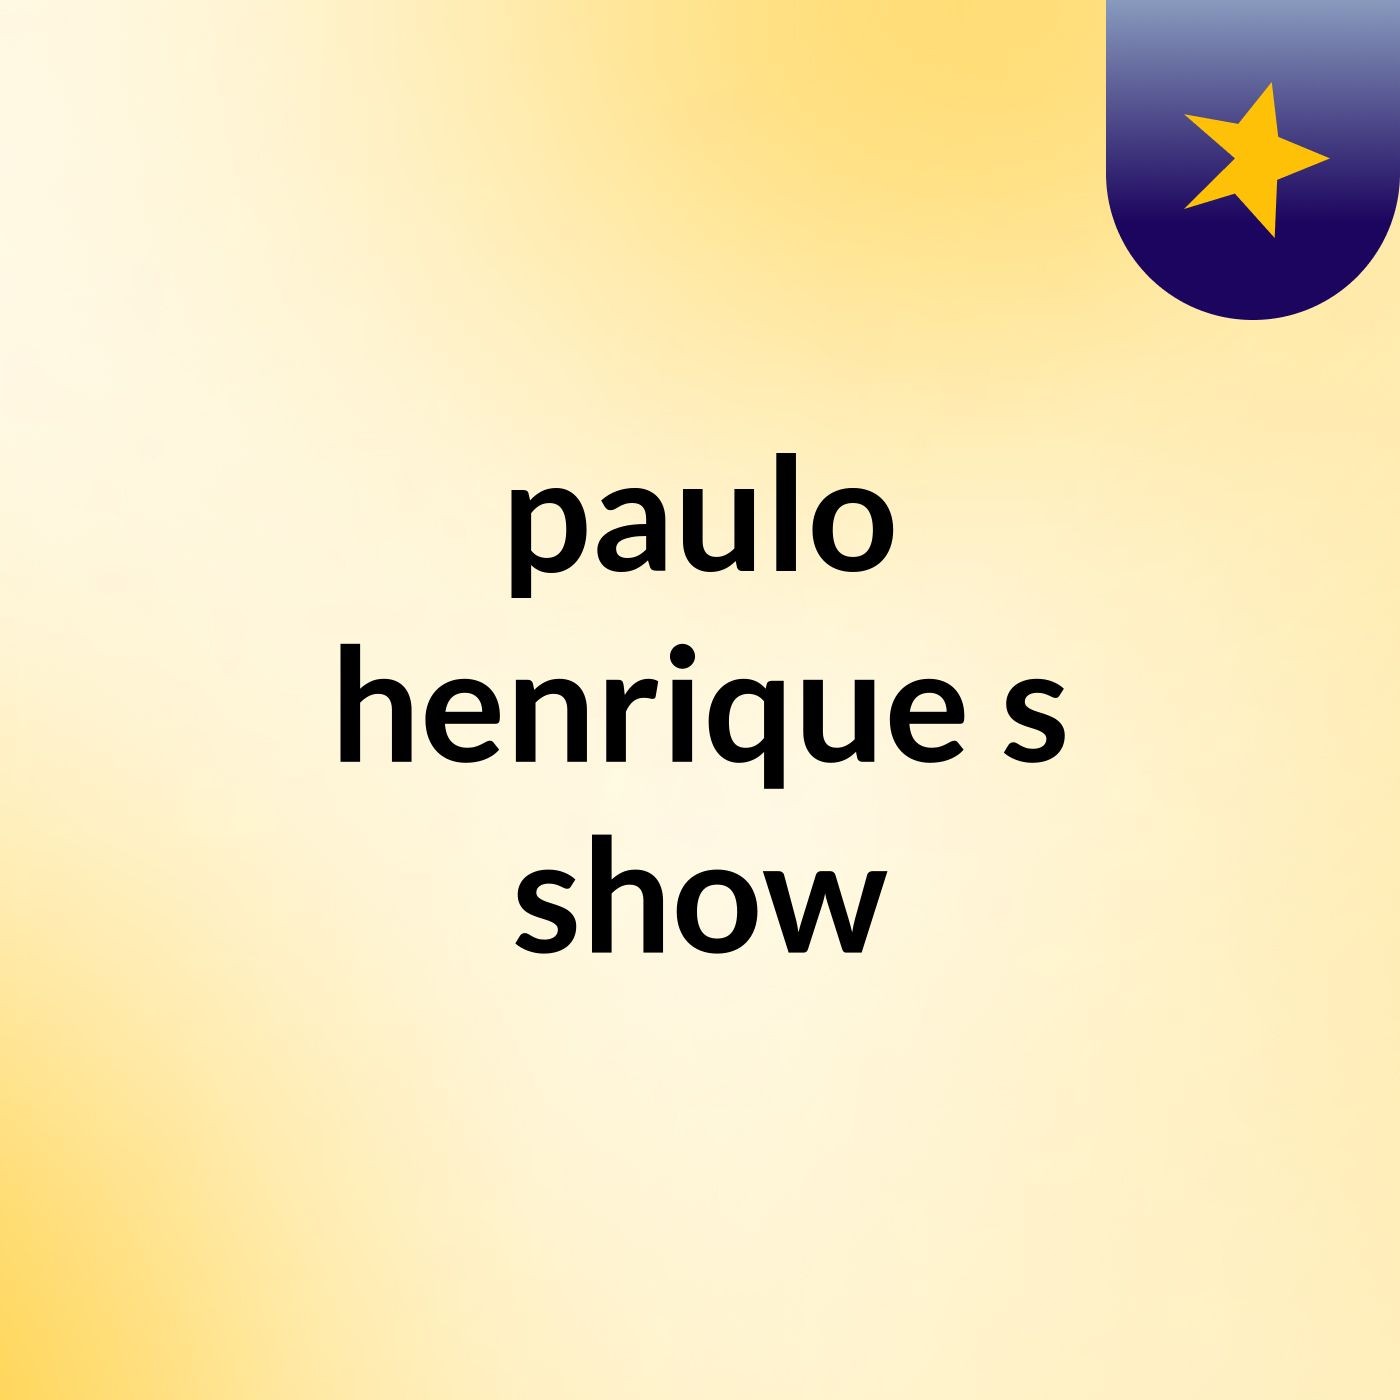 paulo henrique's show